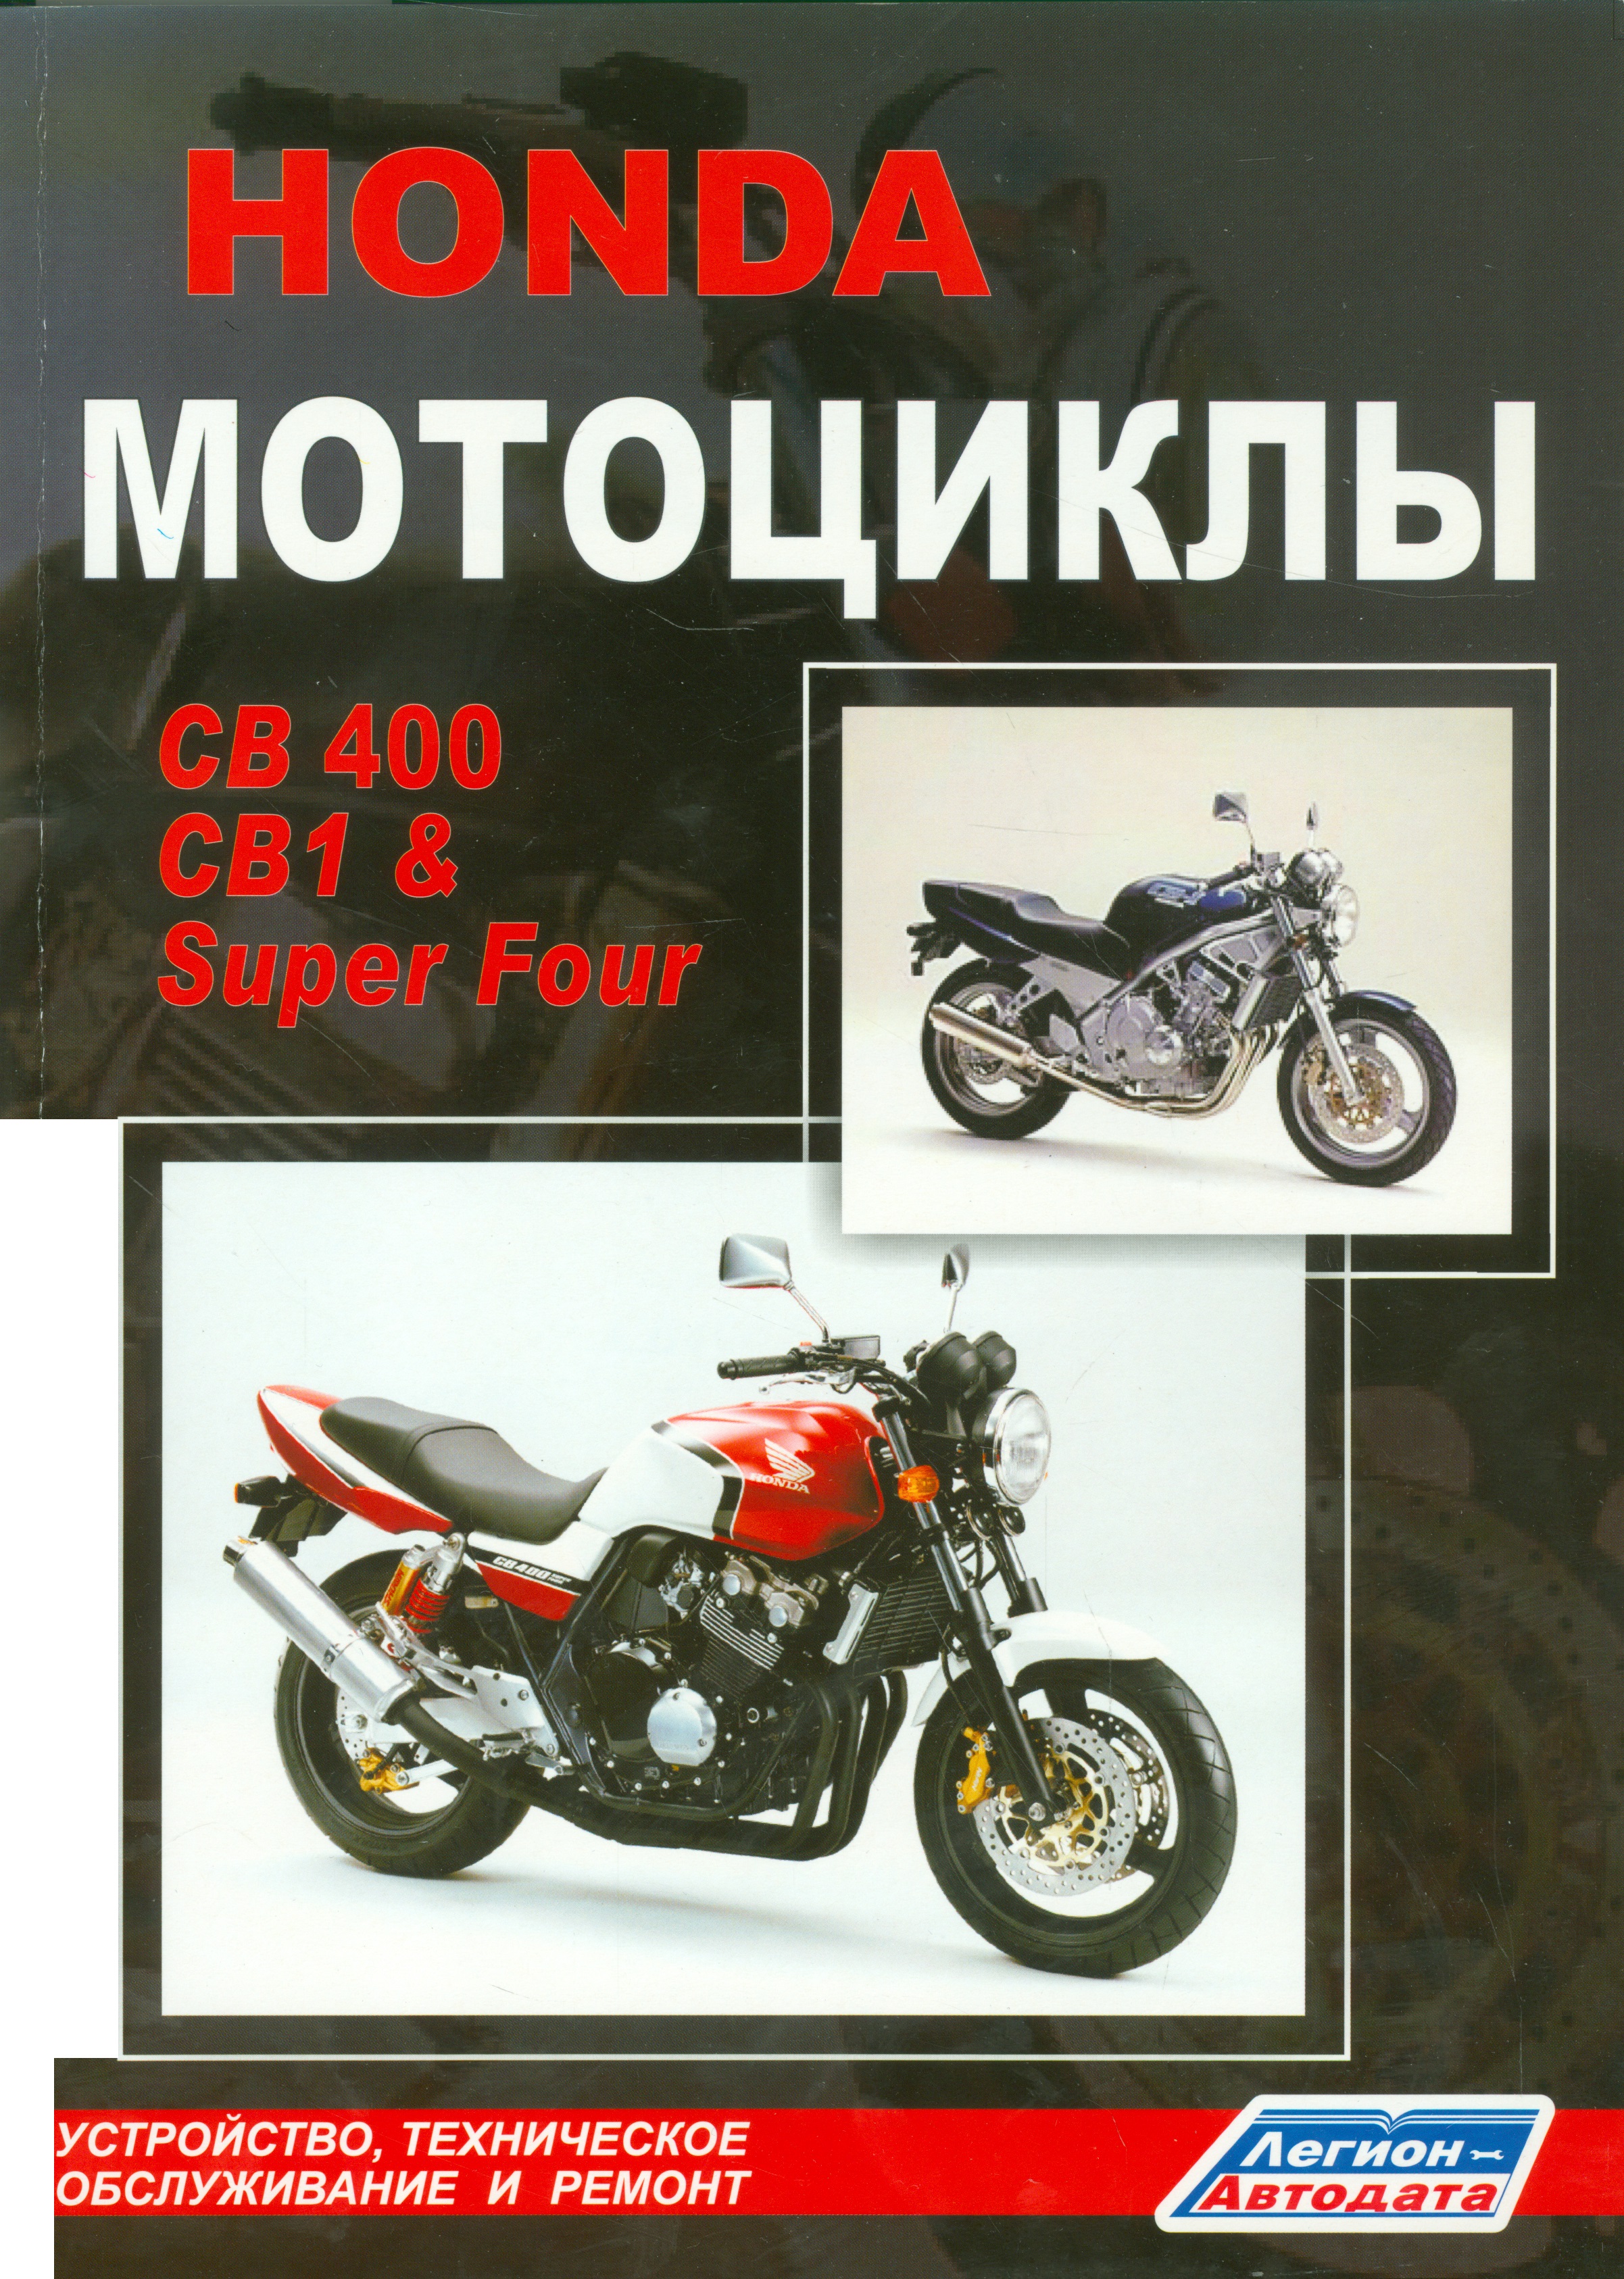 Мотоциклы Honda CB400, CB1 & Super Four. Устройство, техническое обслуживание и ремонт тюнинг мотоциклов руководство